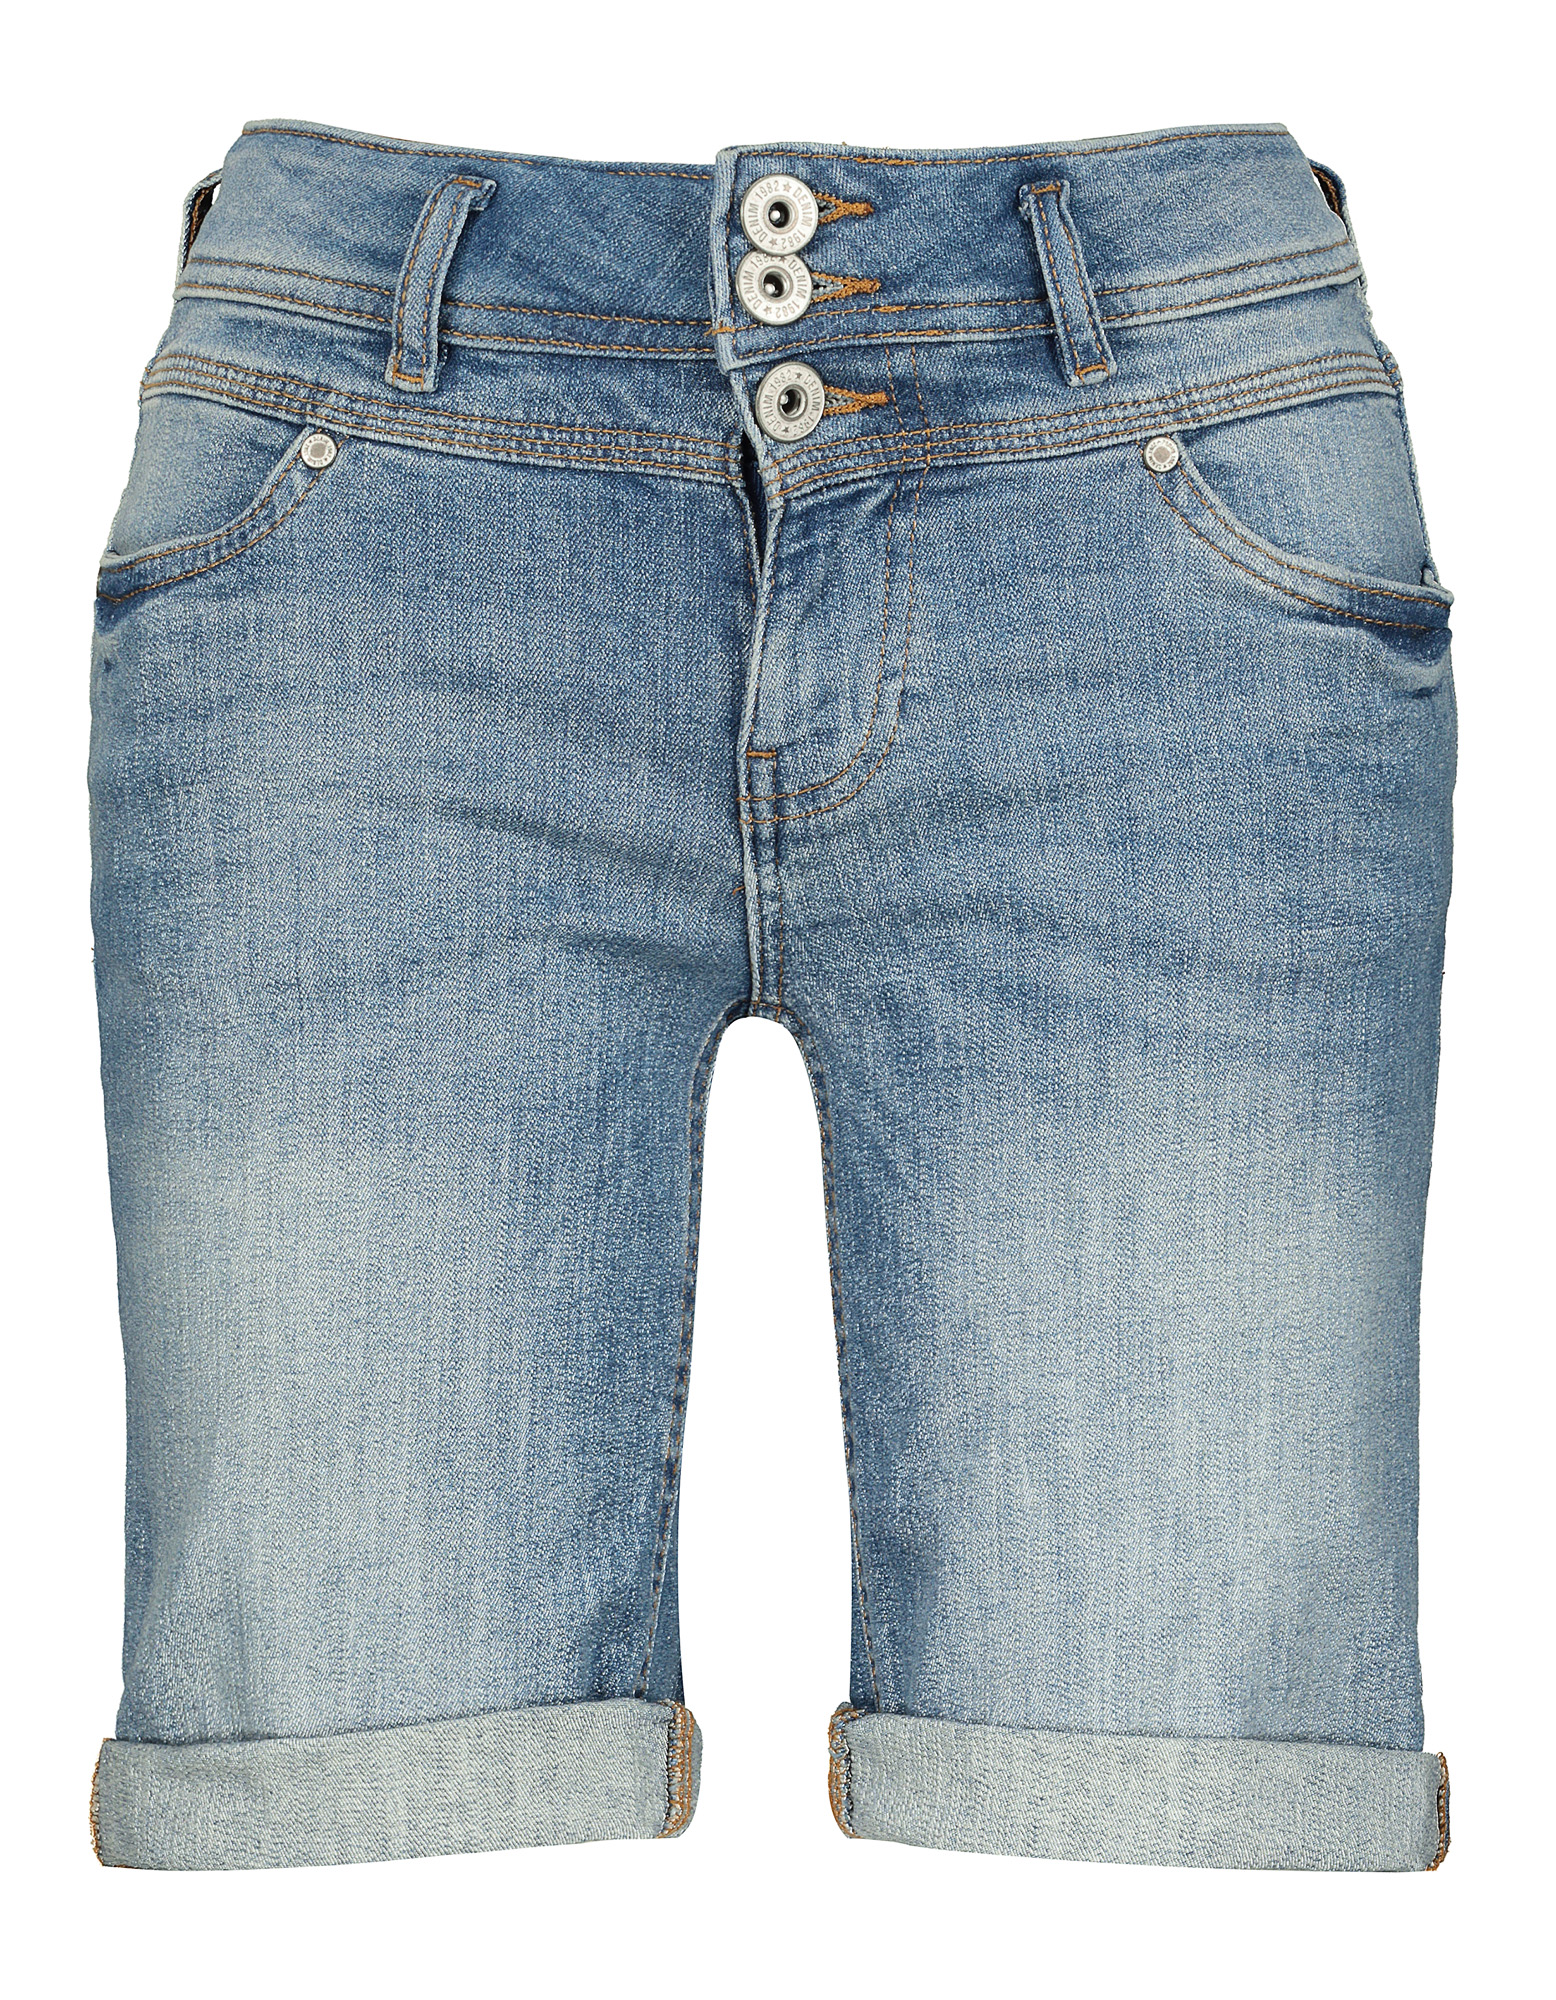 Damen Jeansshorts - fixiertem Beinumschlag - Takko Fashion